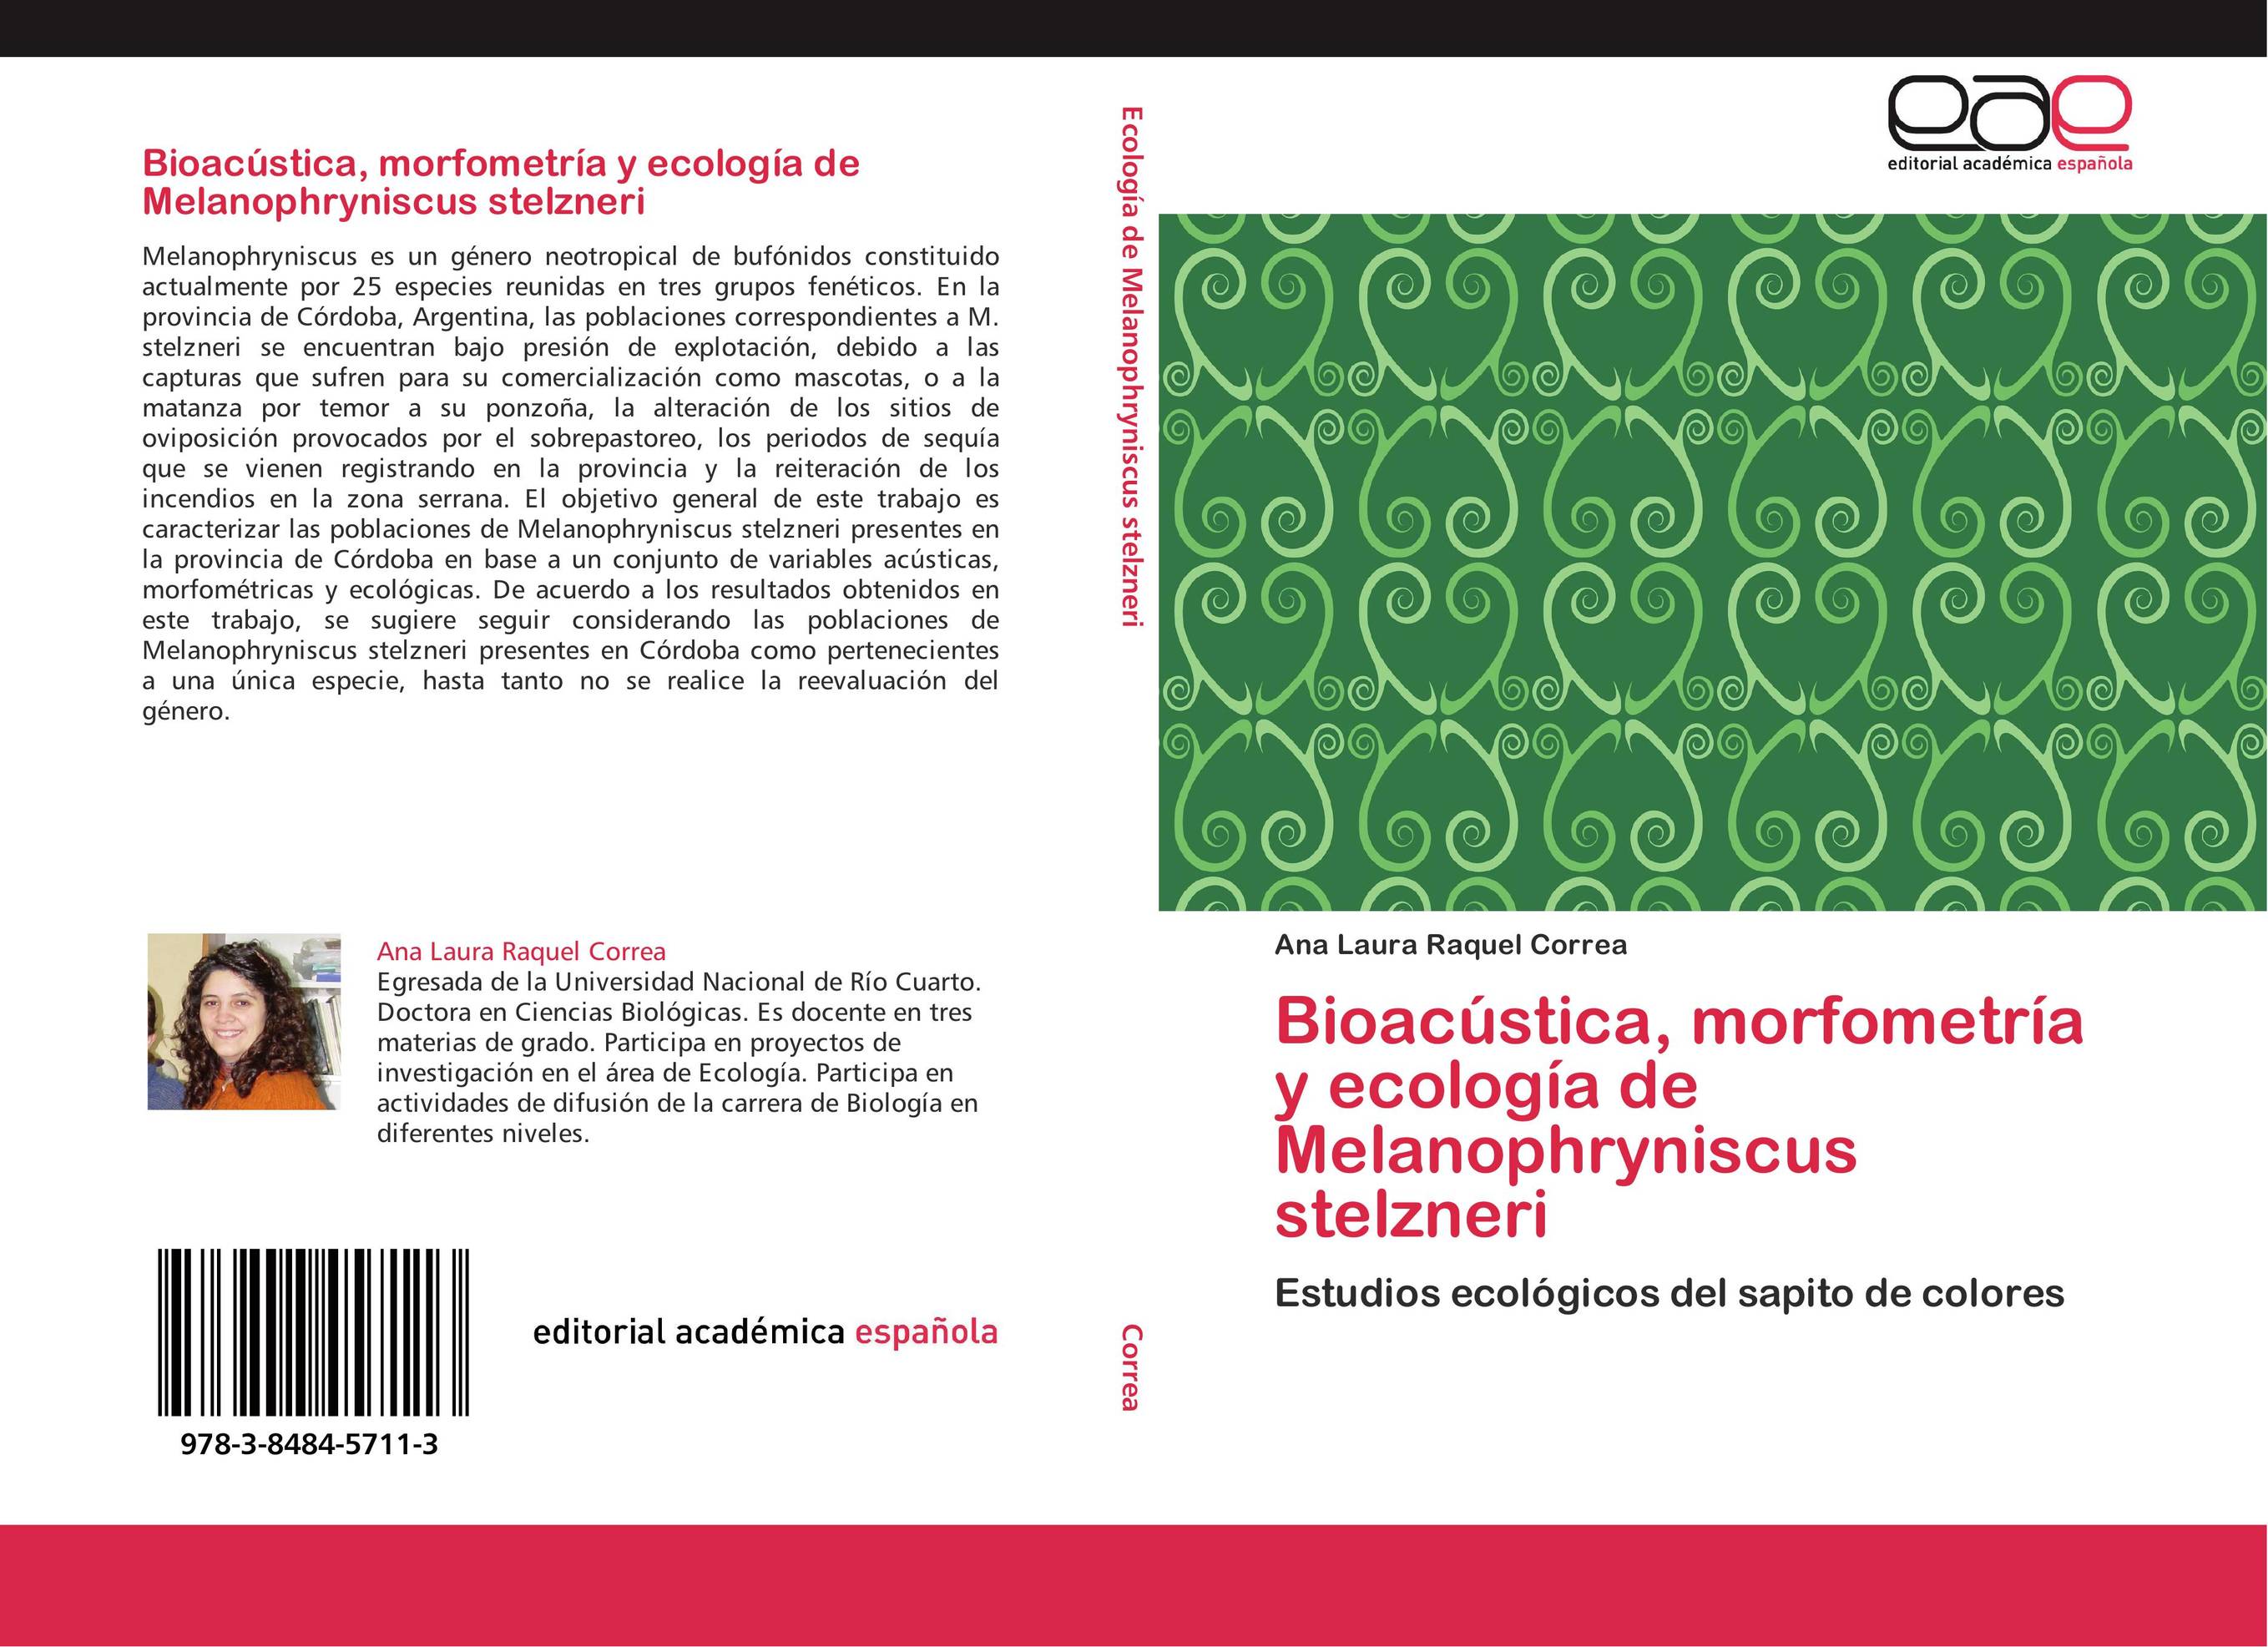 Bioacústica, morfometría y ecología de Melanophryniscus stelzneri